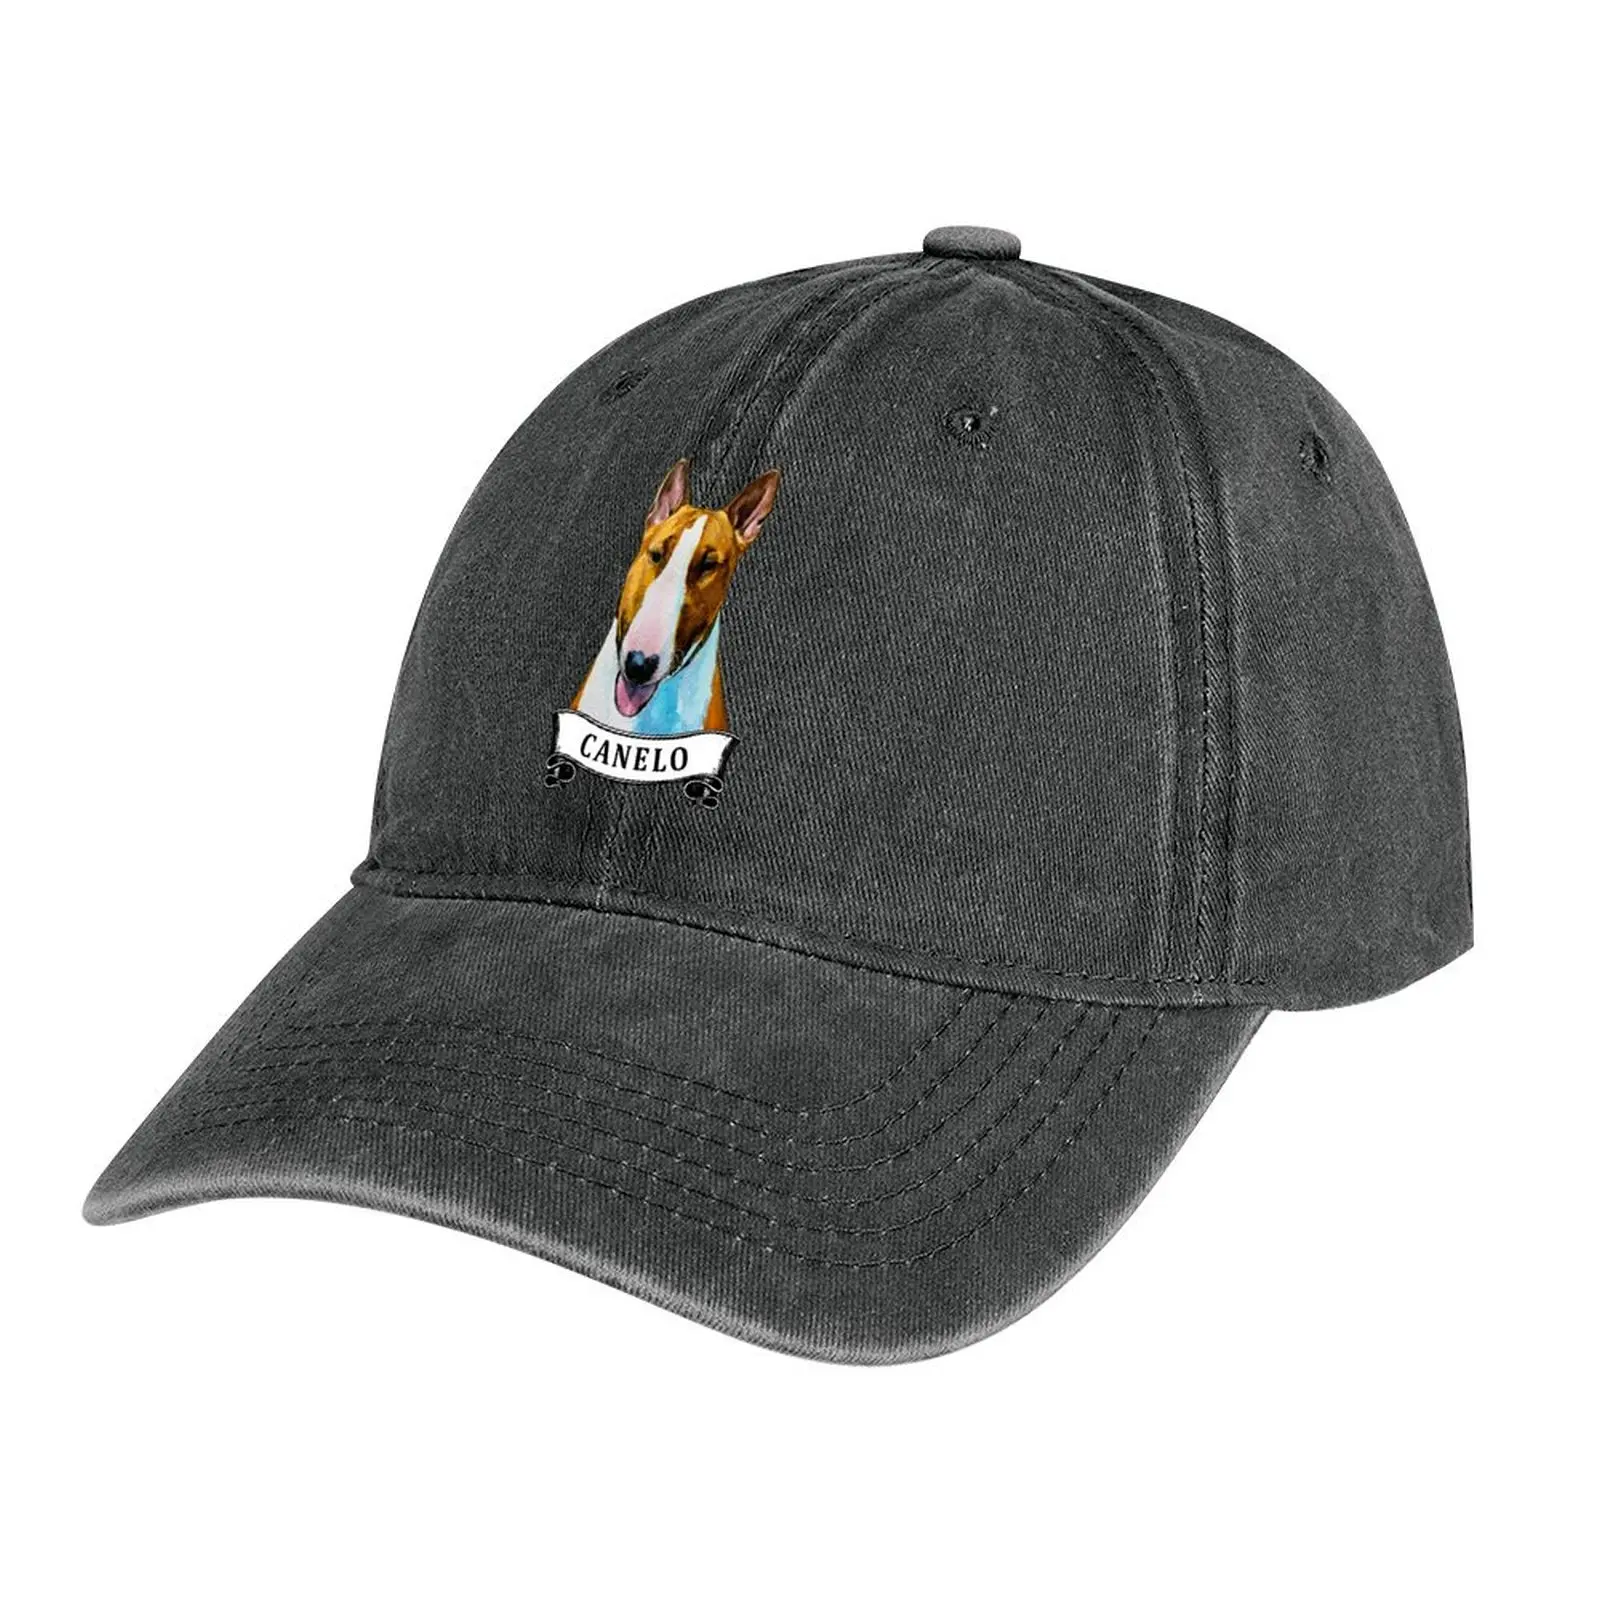 

Canelo Bull Terrier Cowboy Hat Golf Wear birthday Hat Man Luxury Men's Baseball Women's